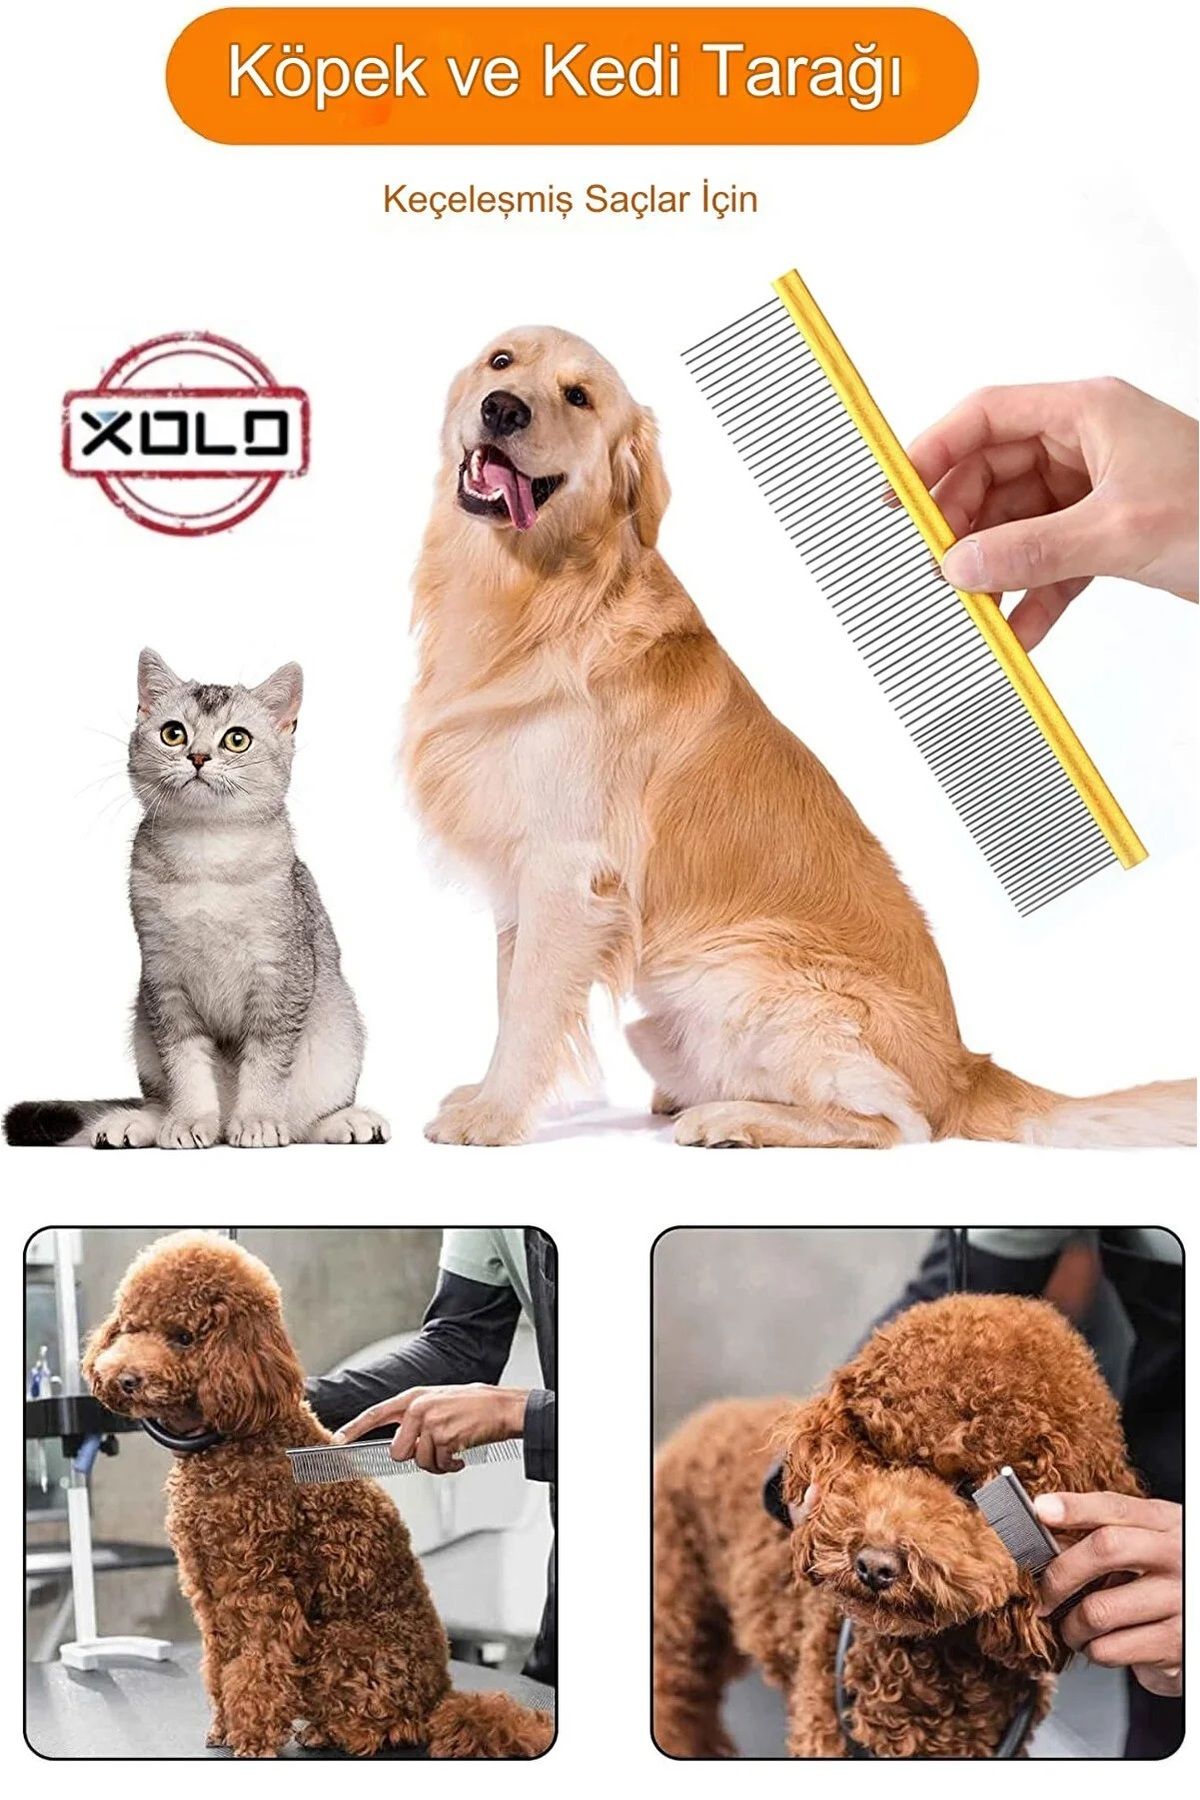 Xolo Altın Rengi Paslanmaz Çelik Bakım Köpek Kedi Tarağı Evcil Hayvan Bakım Aracı Tarağı